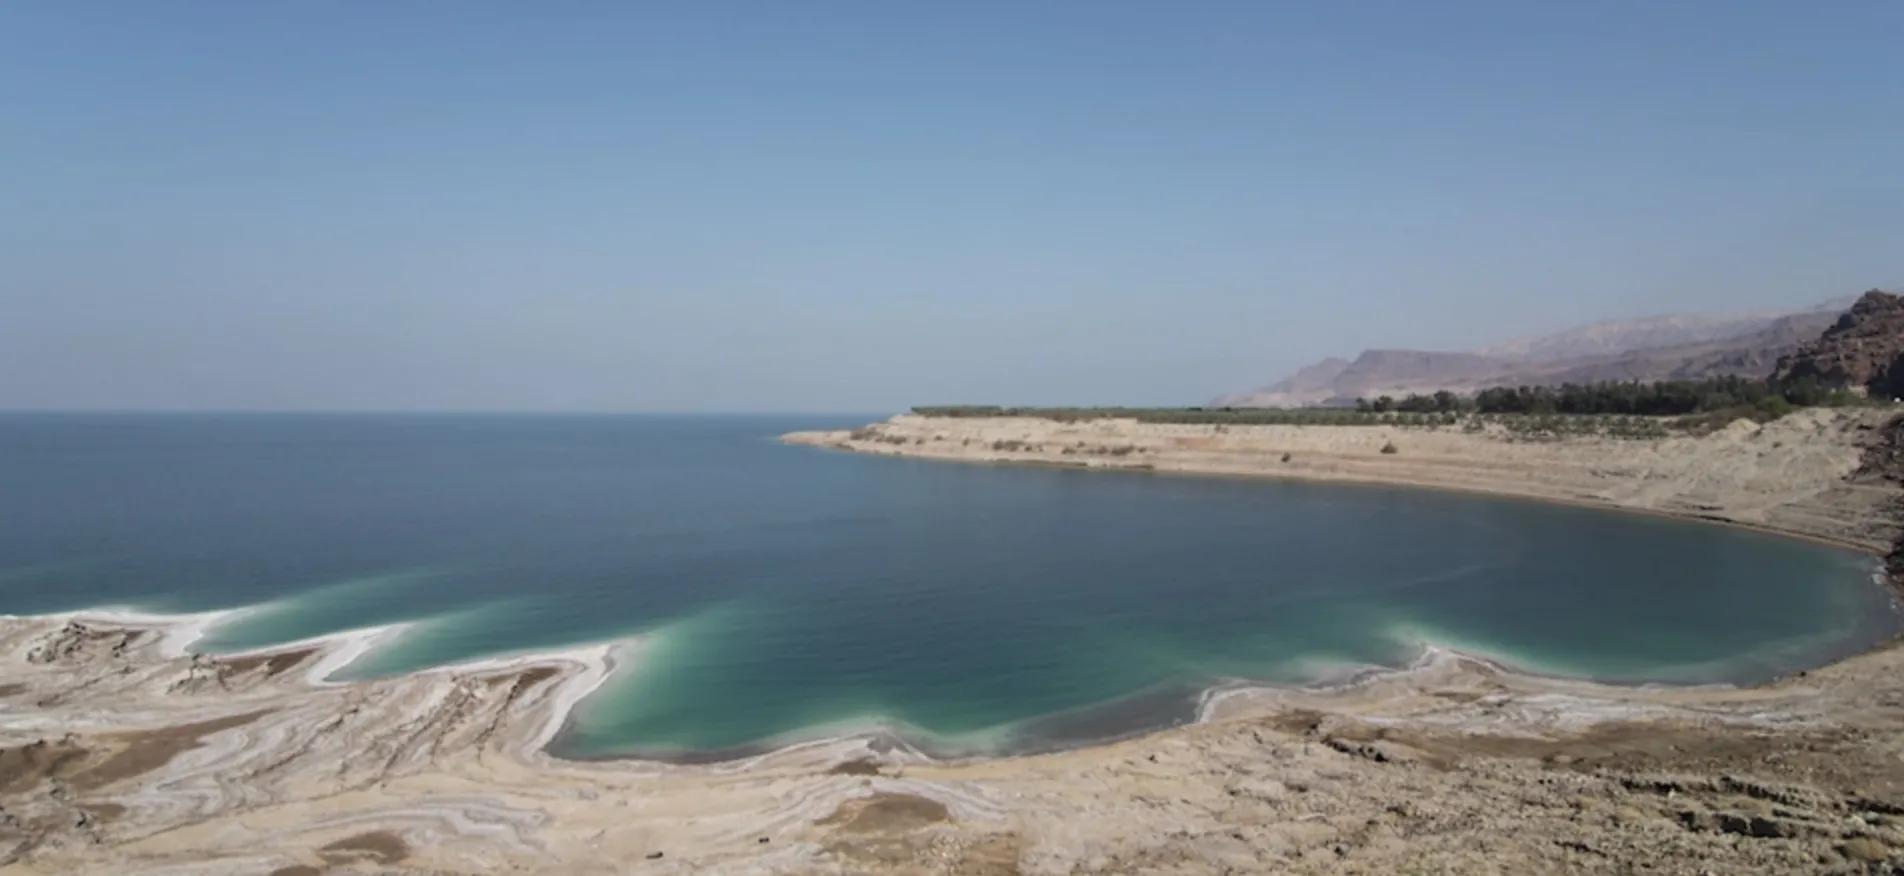 死海在哪个国家 死海位置位于哪里